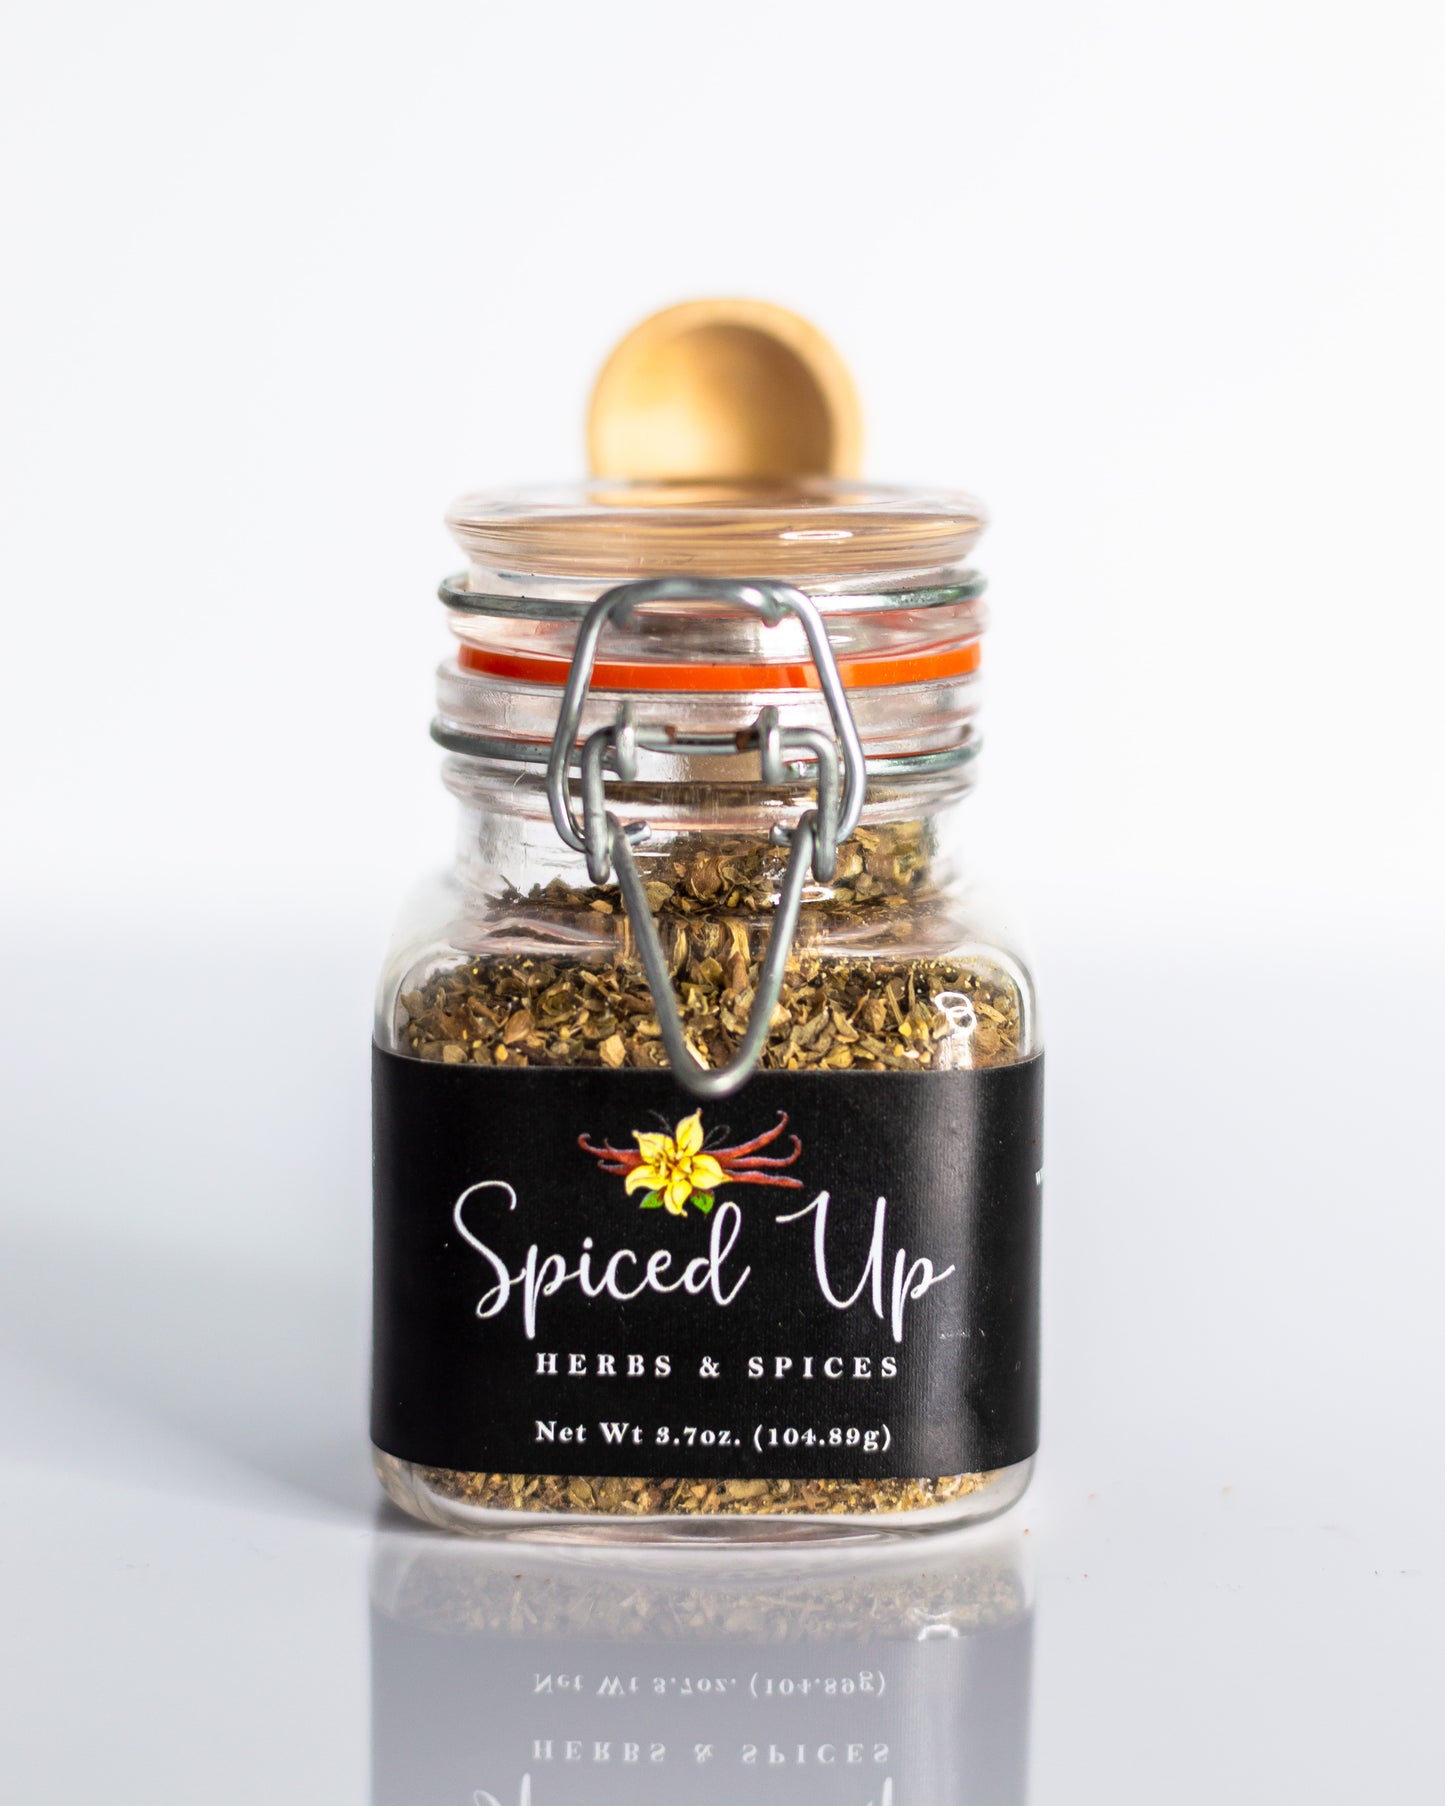 Spiced Up Organic Garlic & Herbs Salt Free Blend **NEW LOOK**